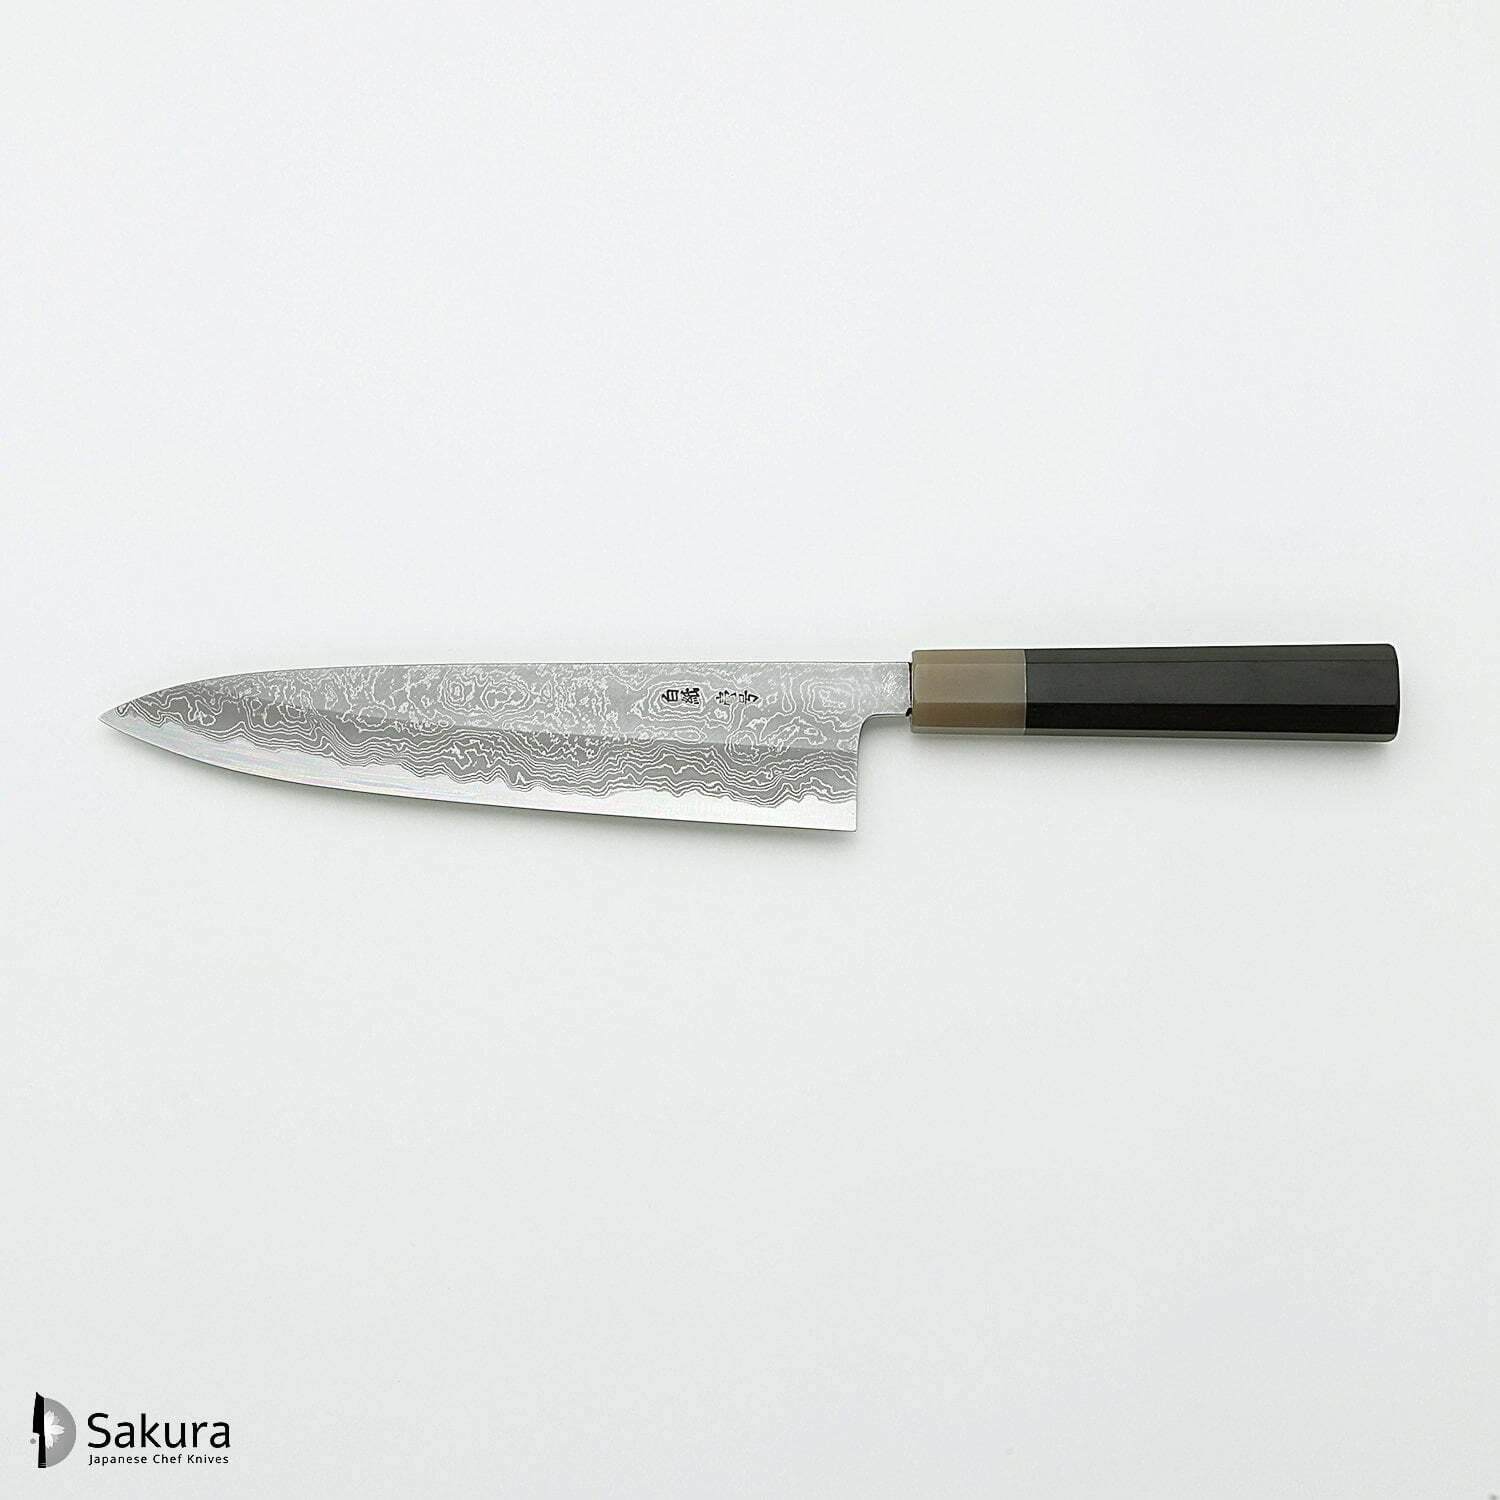 סכין שף רב-תכליתית גִּיוּטוֹ 240מ״מ מחושלת בעבודת יד 3 שכבות: פלדת פחמן יפנית מתקדמת מסוג Shirogami #1 עטופה פלדת דמשק אל-חלד גימור דמשק יושיקאזו טאנקה יפן